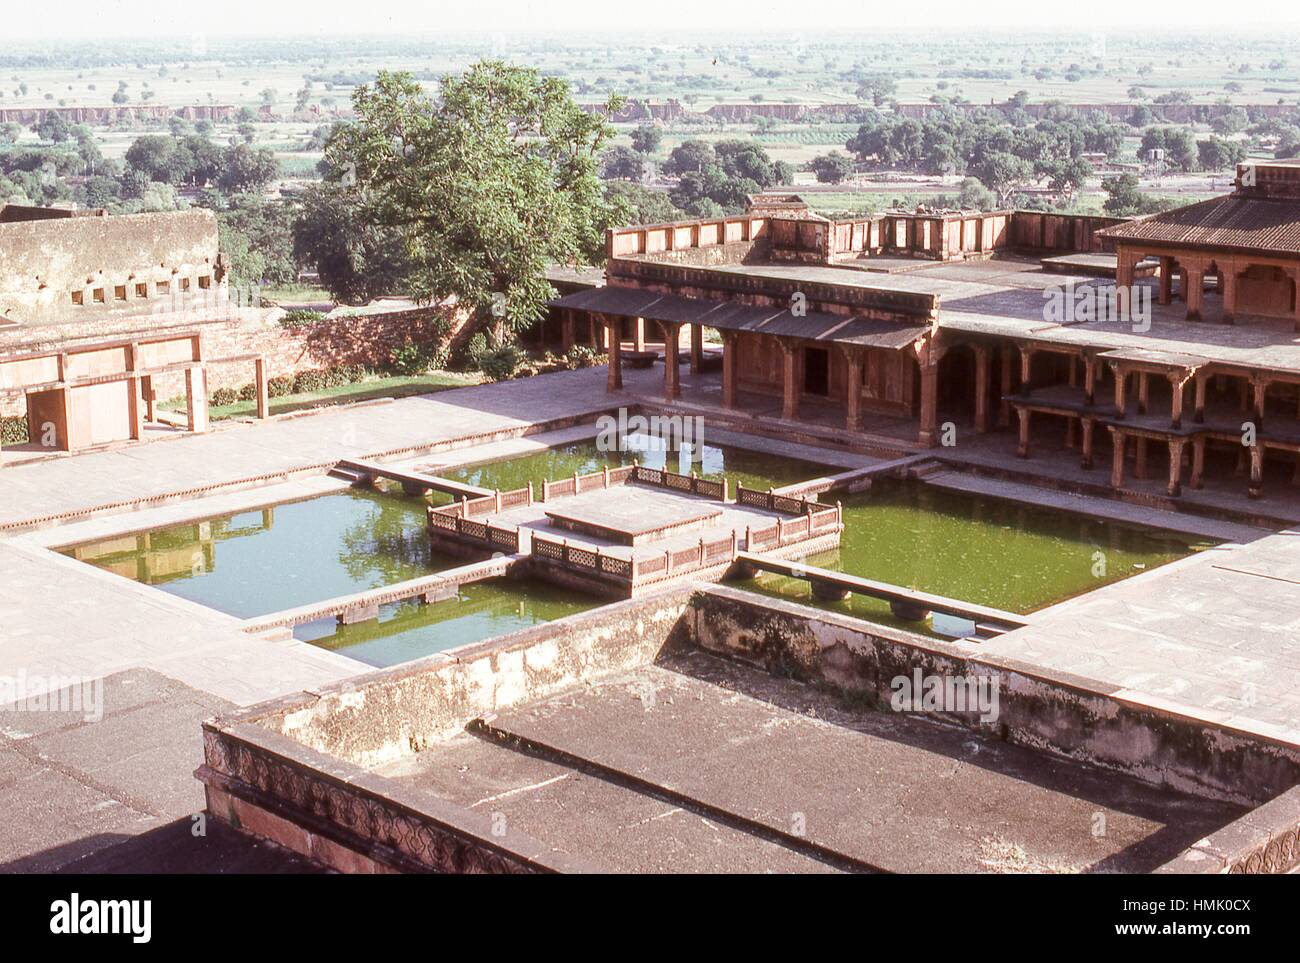 Blick auf die Anup Talao ornamentalen Pools von oben auf den Panch Mahal Palast, innen die königliche Enklave von Fatehpur Sikri, in der Agra Bezirk von Uttar Pradesh, Indien, November 1973. (Foto von Morse Sammlung/Gado/Getty Images). Stockfoto